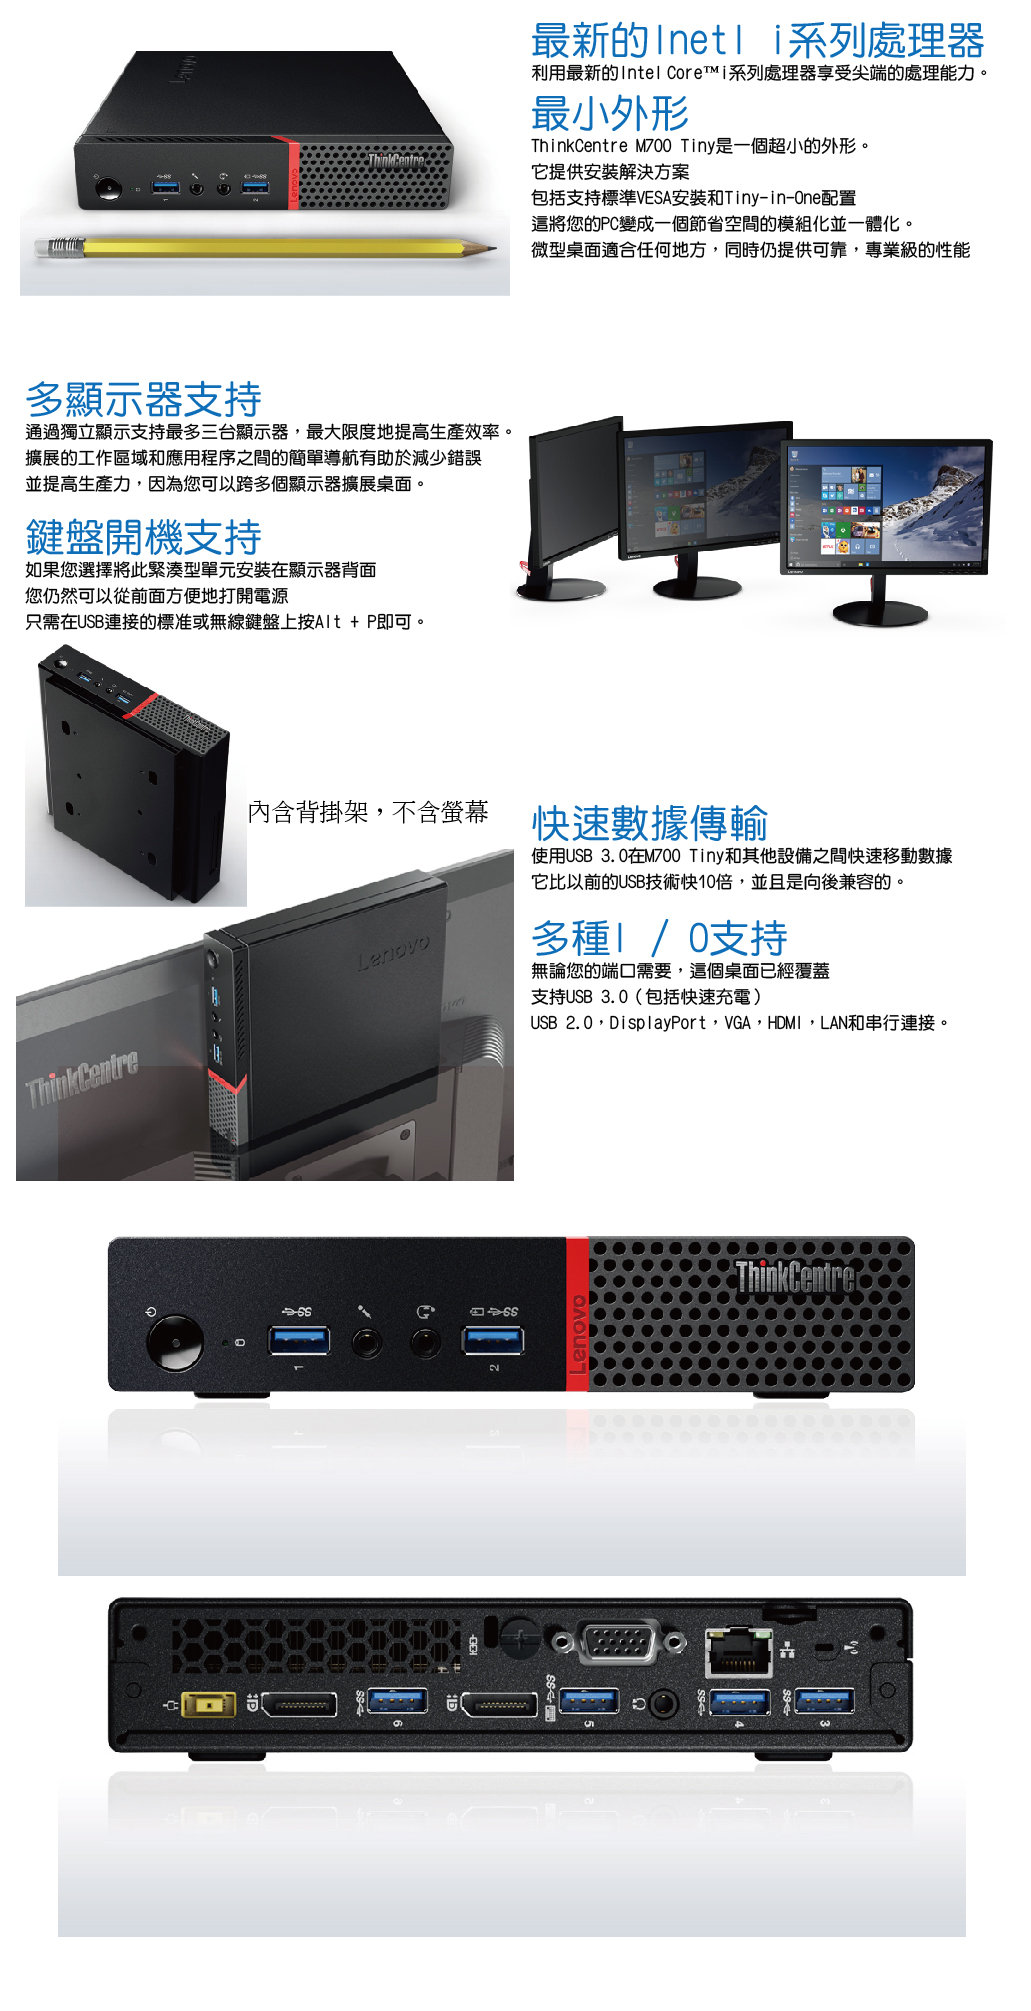 【阿福3C】聯想 Lenovo ThinkCentre M700 Tiny 四核商用迷你電腦 【core i5-6500T 8G 500GB  Win7專業版(內含背掛架)】